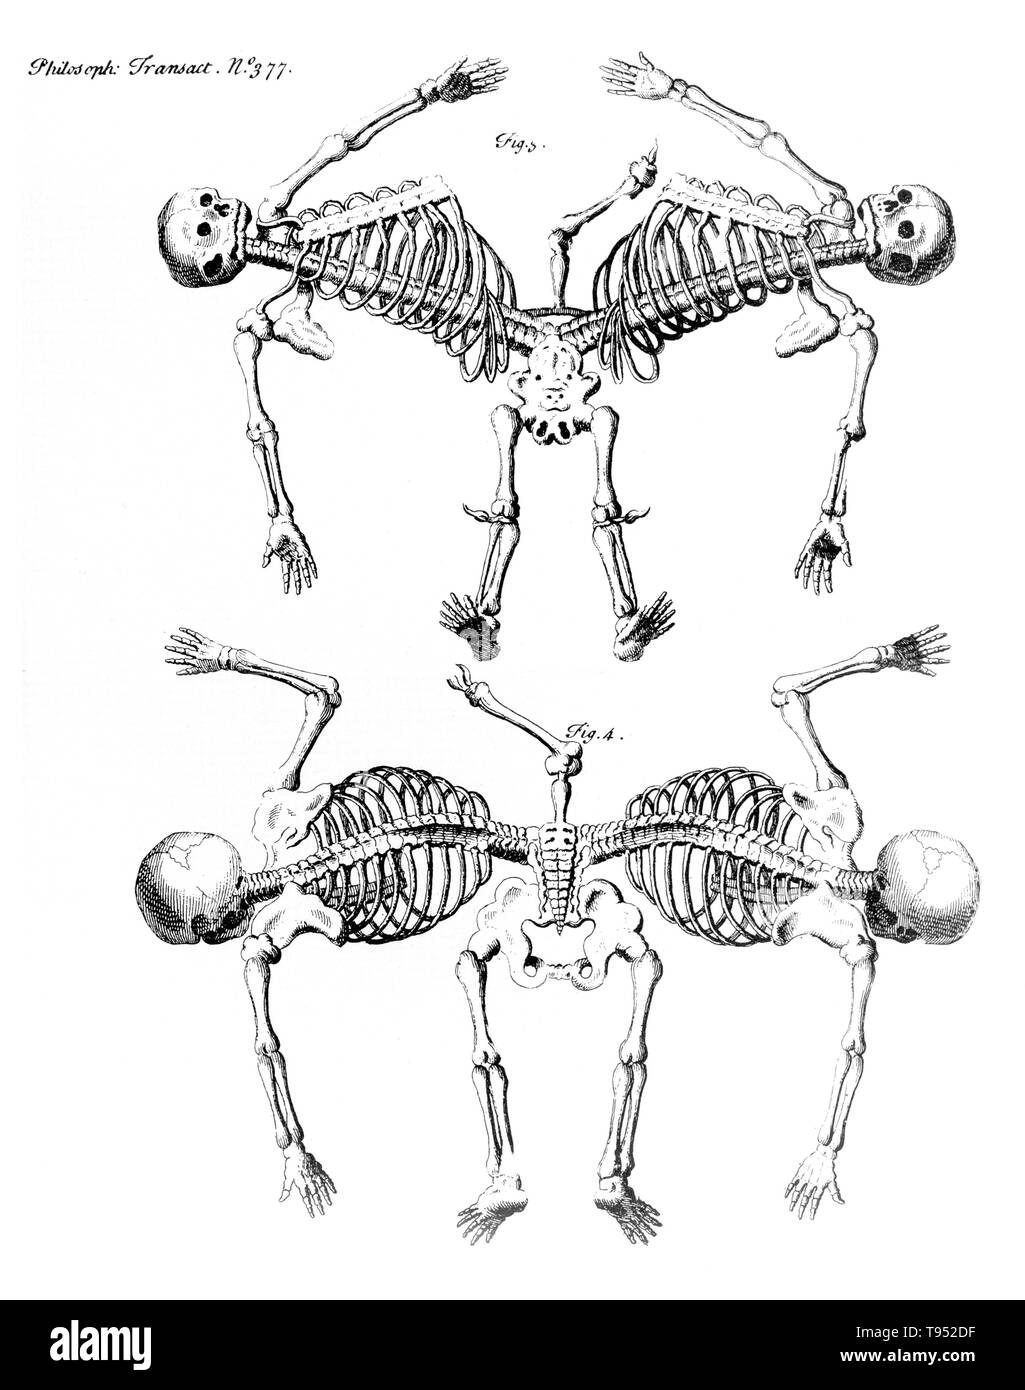 Siamesische Zwillinge sind eineiige Zwillinge mit ihren Körpern Irgendwann trat geboren und in unterschiedlichem Grad der verbleibenden Vervielfältigung, durch die unvollständige Teilung der Eizelle, aus der die Zwillinge entwickelt. Ischiopagus Zwillinge haben die untere Hälfte der beiden Körper verschmolzen, mit Stacheln Ende-zu-Ende im 180 Grad Winkel verbunden. Die Zwillinge haben vier Arme, zwei, drei oder vier Beine; und in der Regel eine externe Gruppe von Genitalien und Anus. Bild erschien in "Philosophical Transactions", Band 31-32 Nr. 377, Firgure 3&4, veröffentlicht 1720-23. Stockfoto